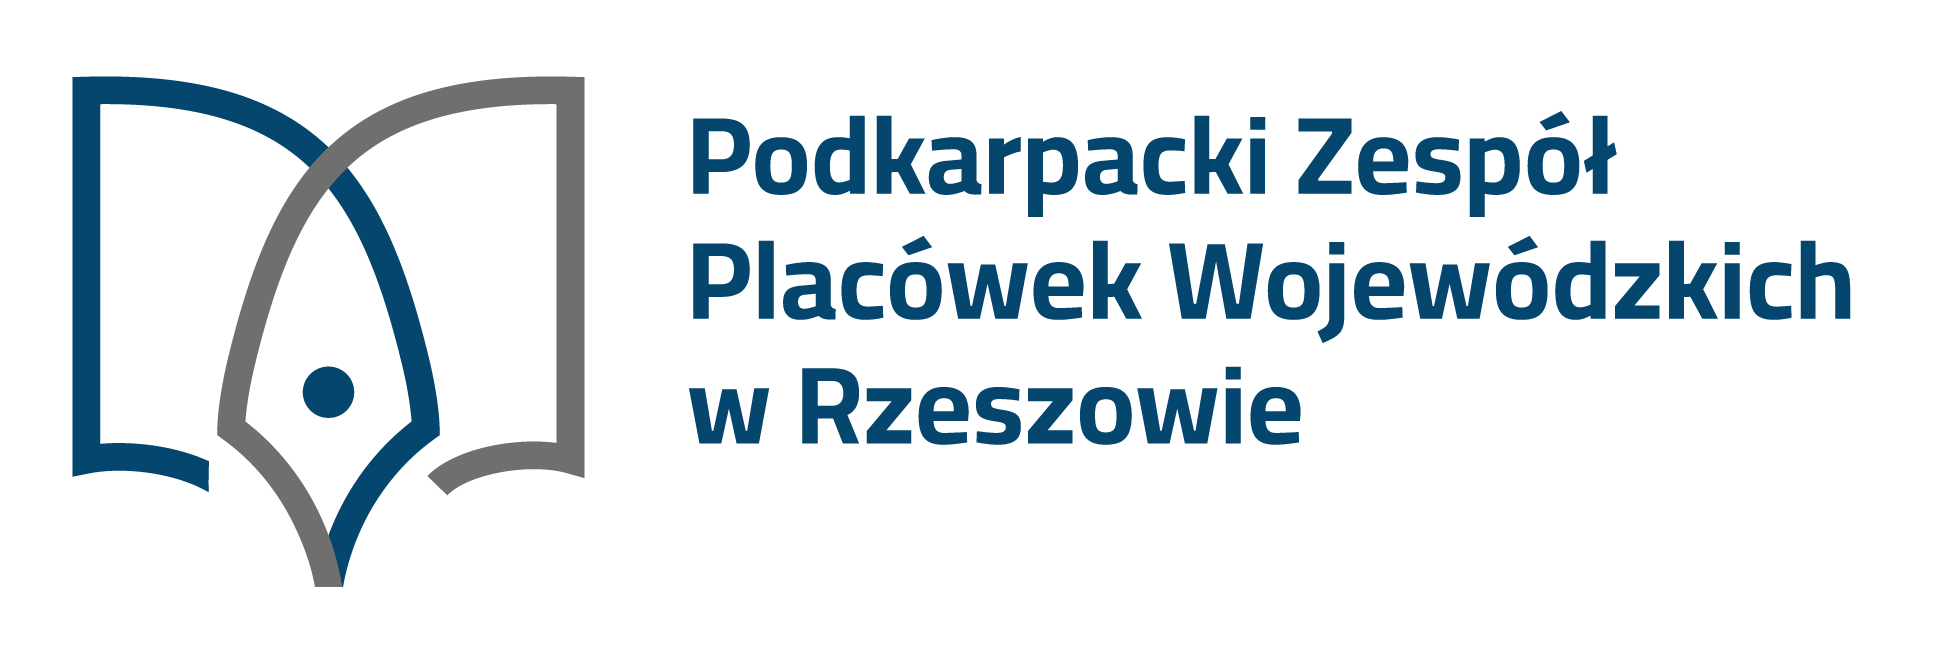 Podkarpacki Zespół Placówek Wojewódzkich w Rzeszowie